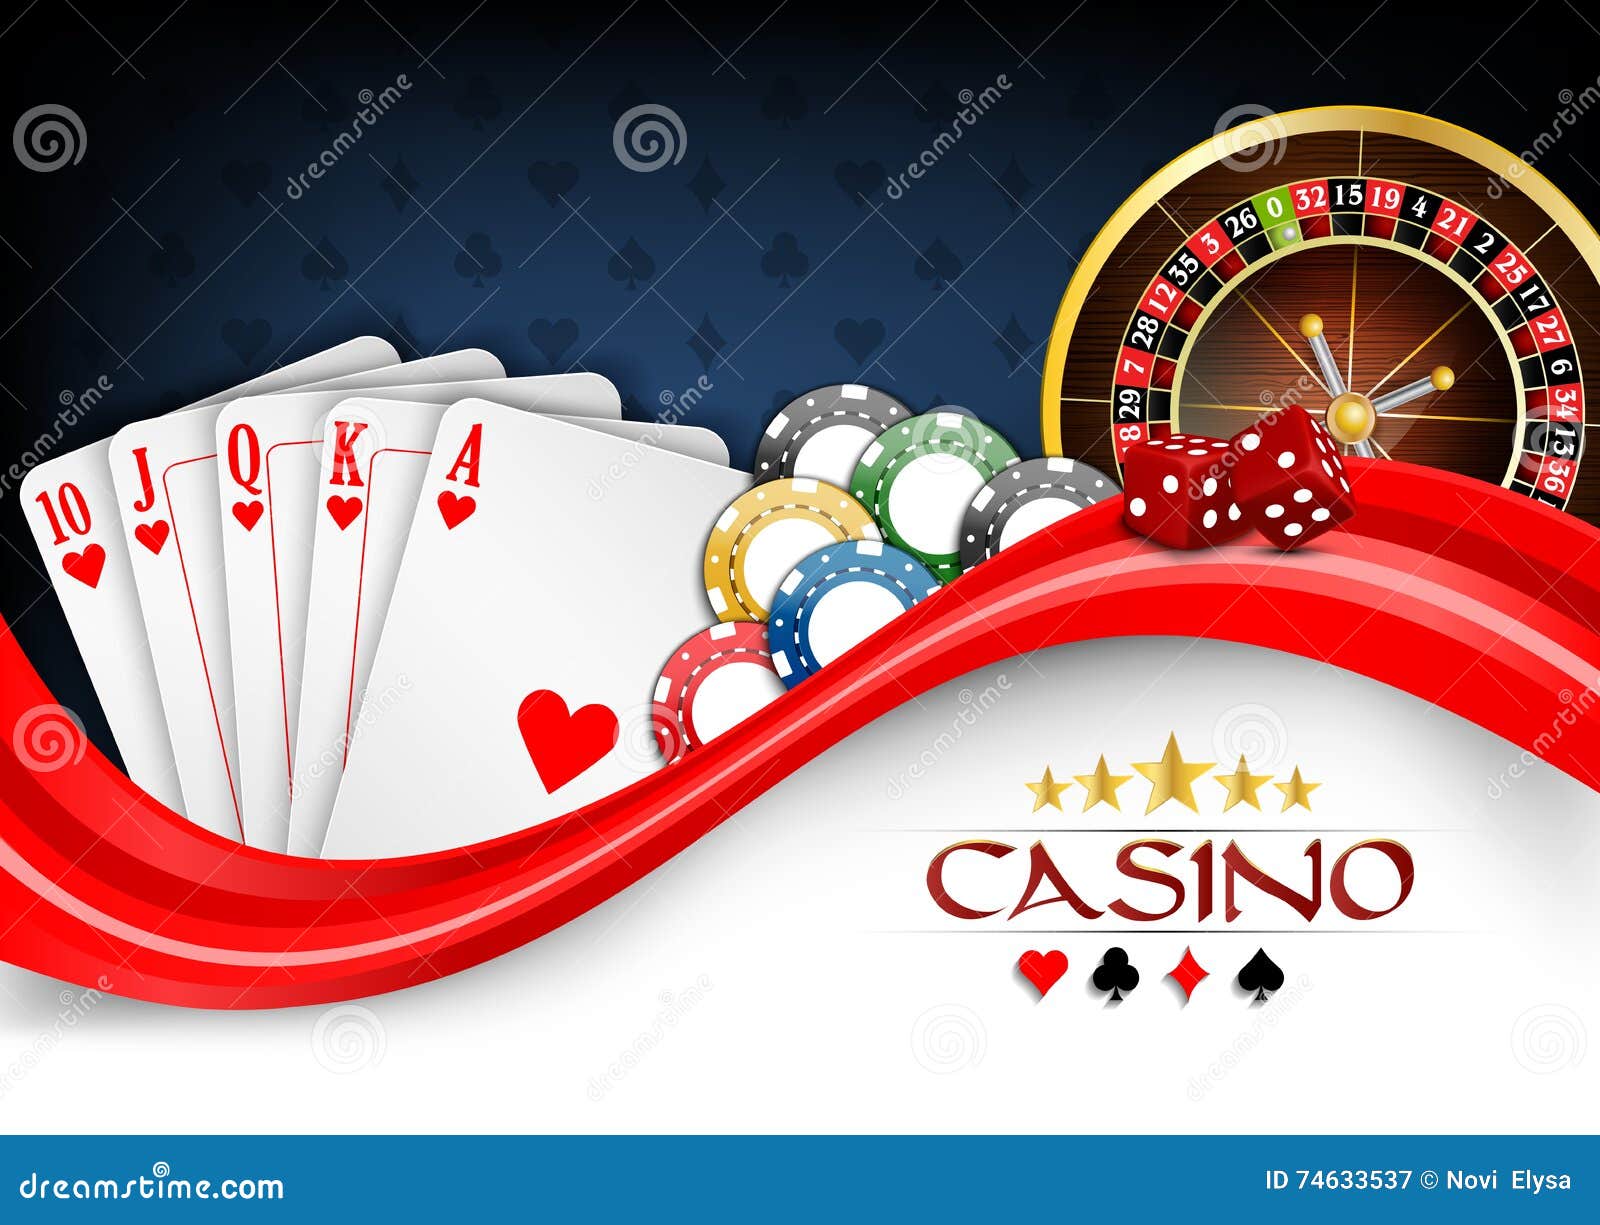 Casino Business Cards Design